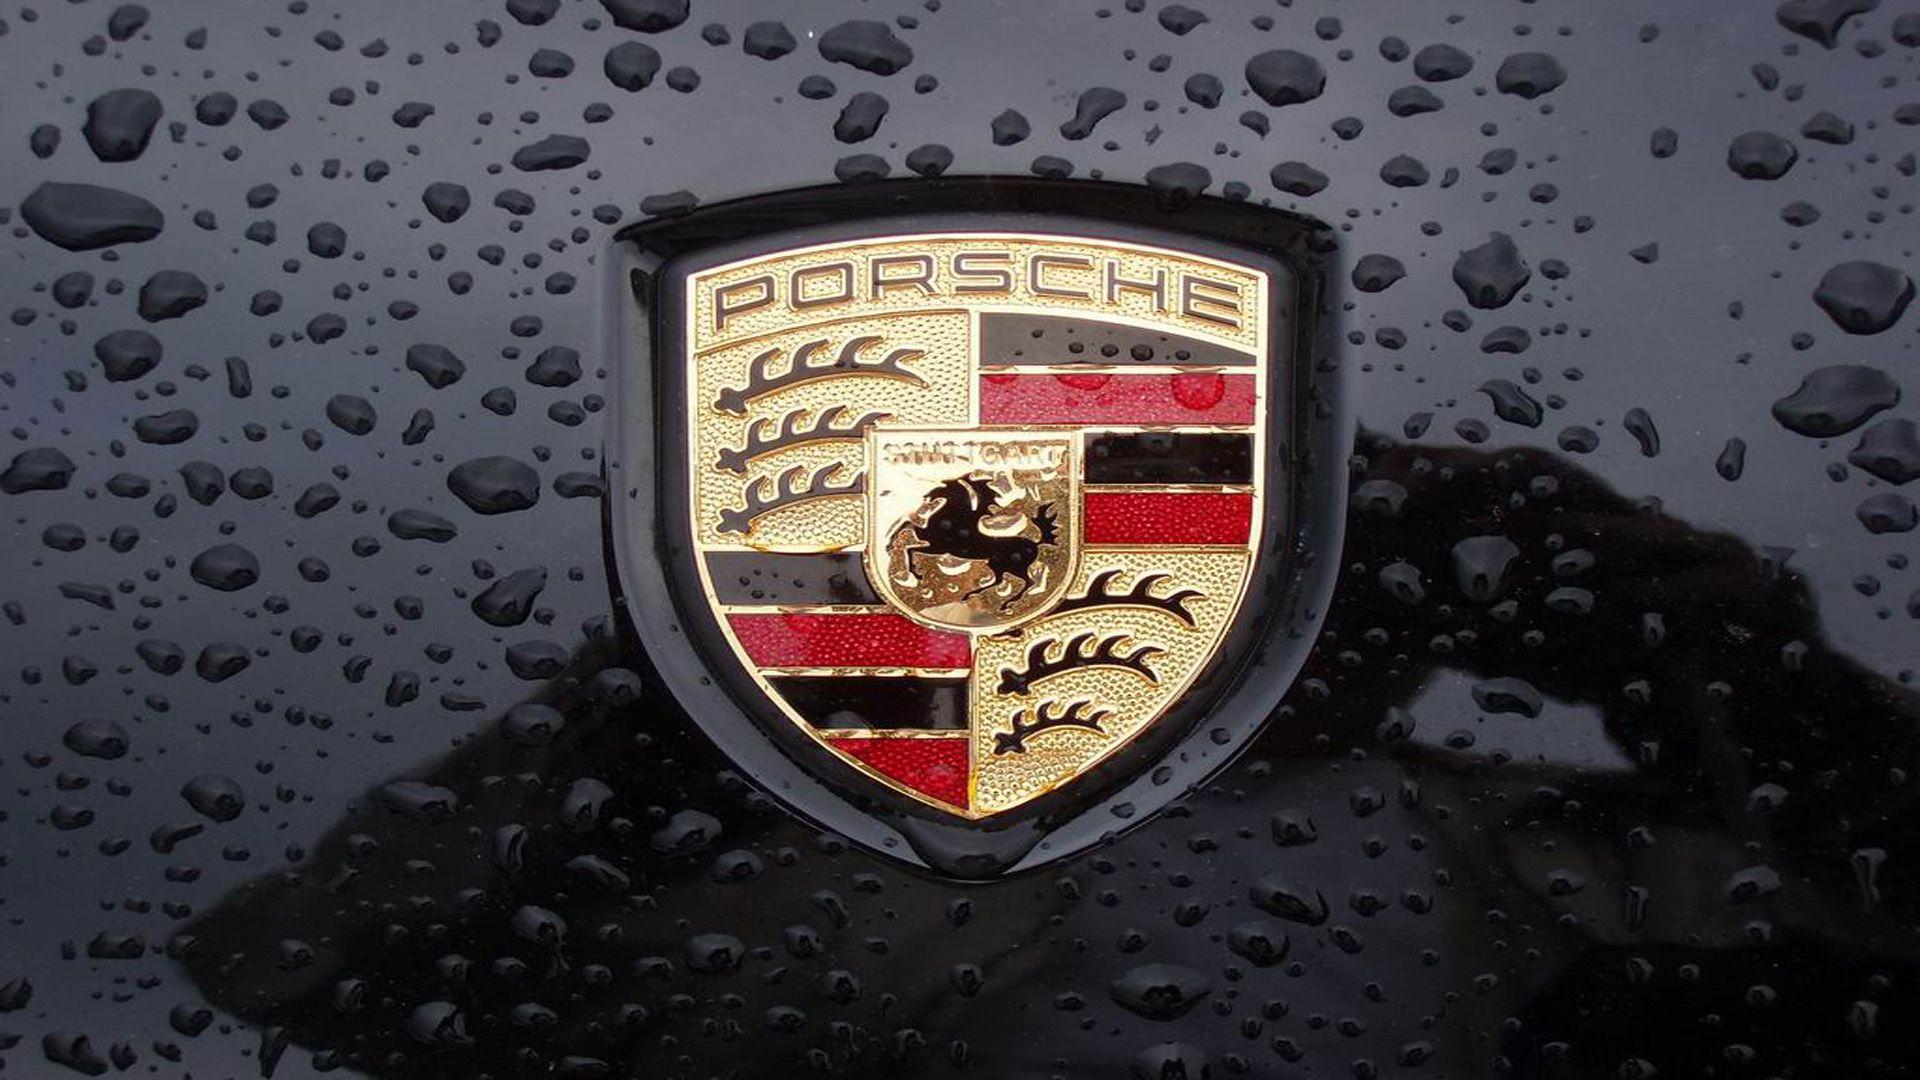 Porsche Logo Wallpaper High Quality Sdeerwallpaper